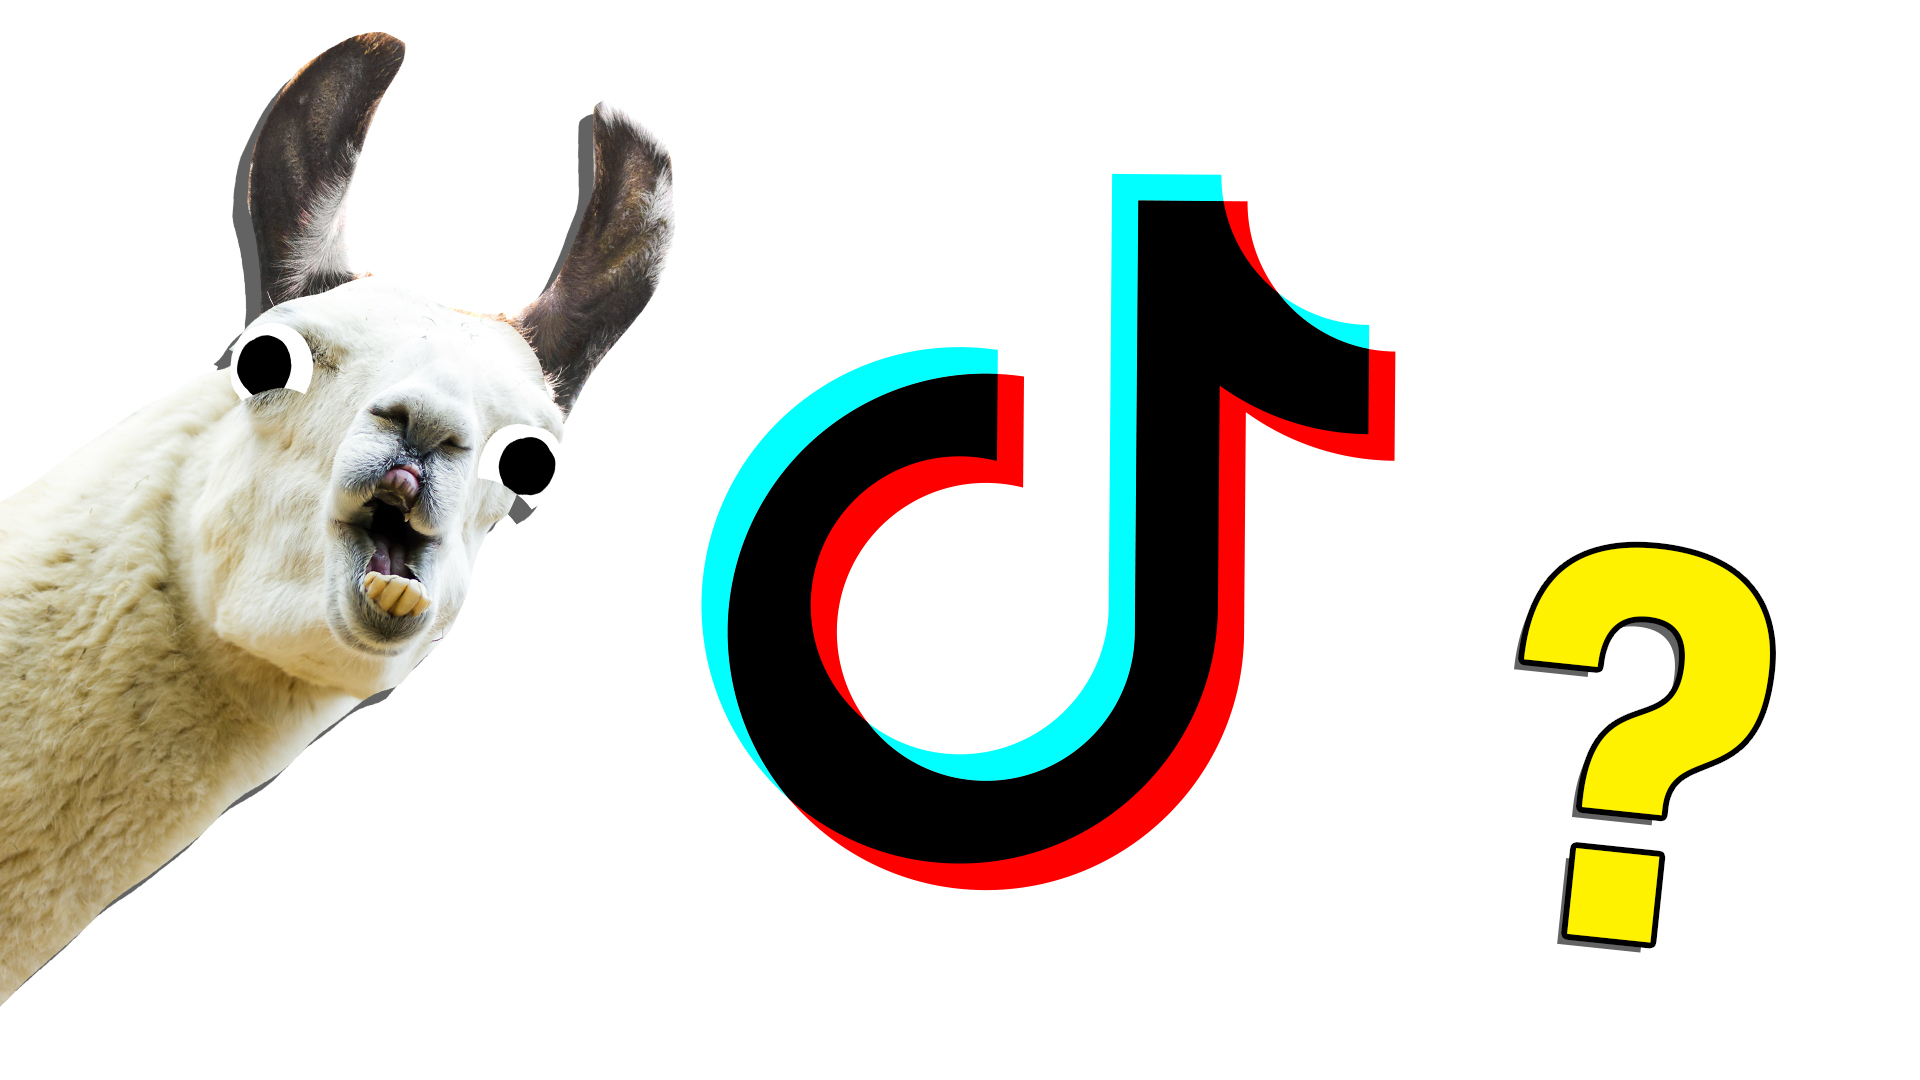 A llama laughs at the Tik Tok logo